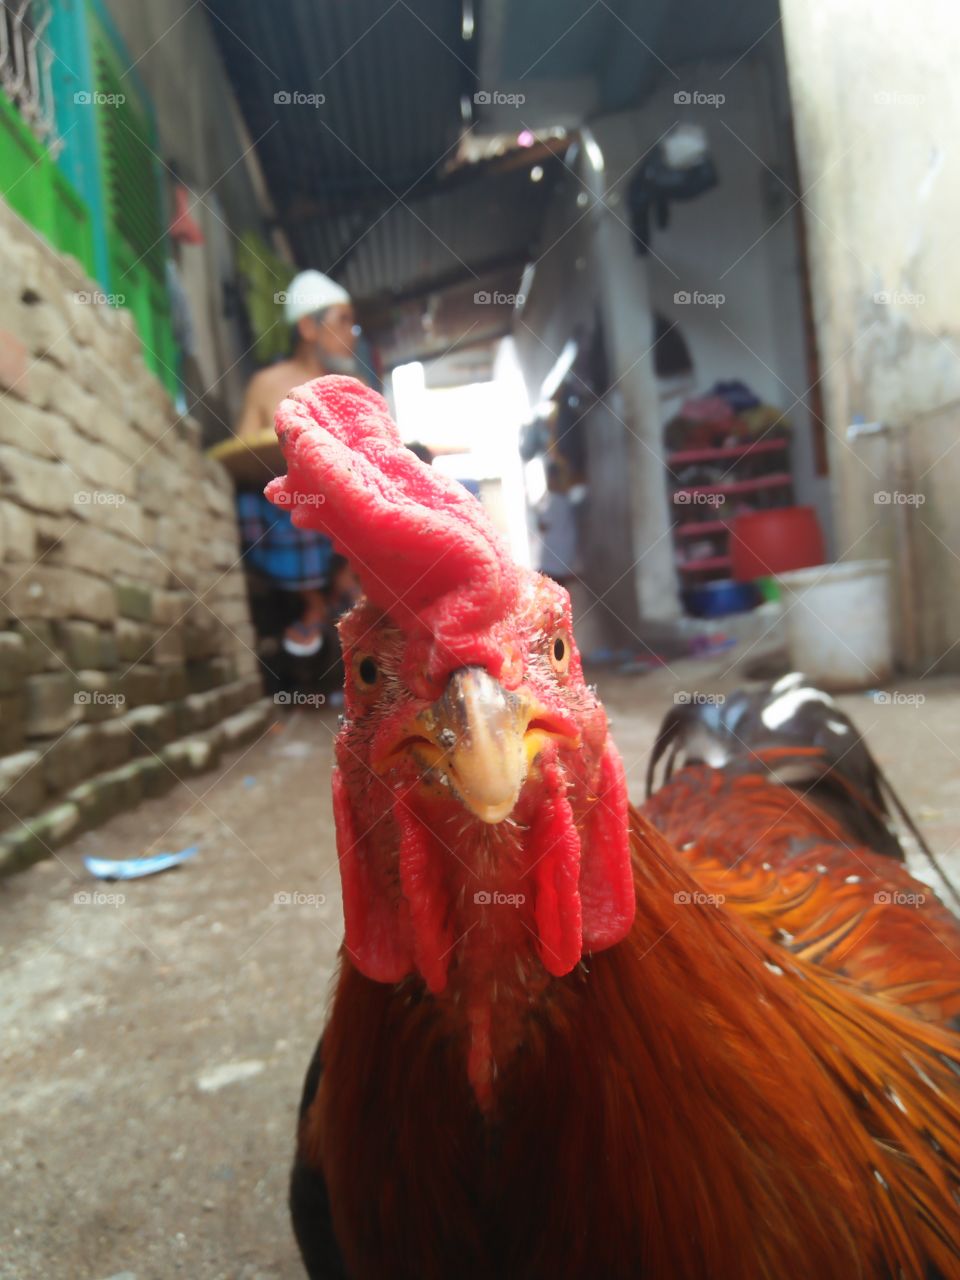 Ayam Jago